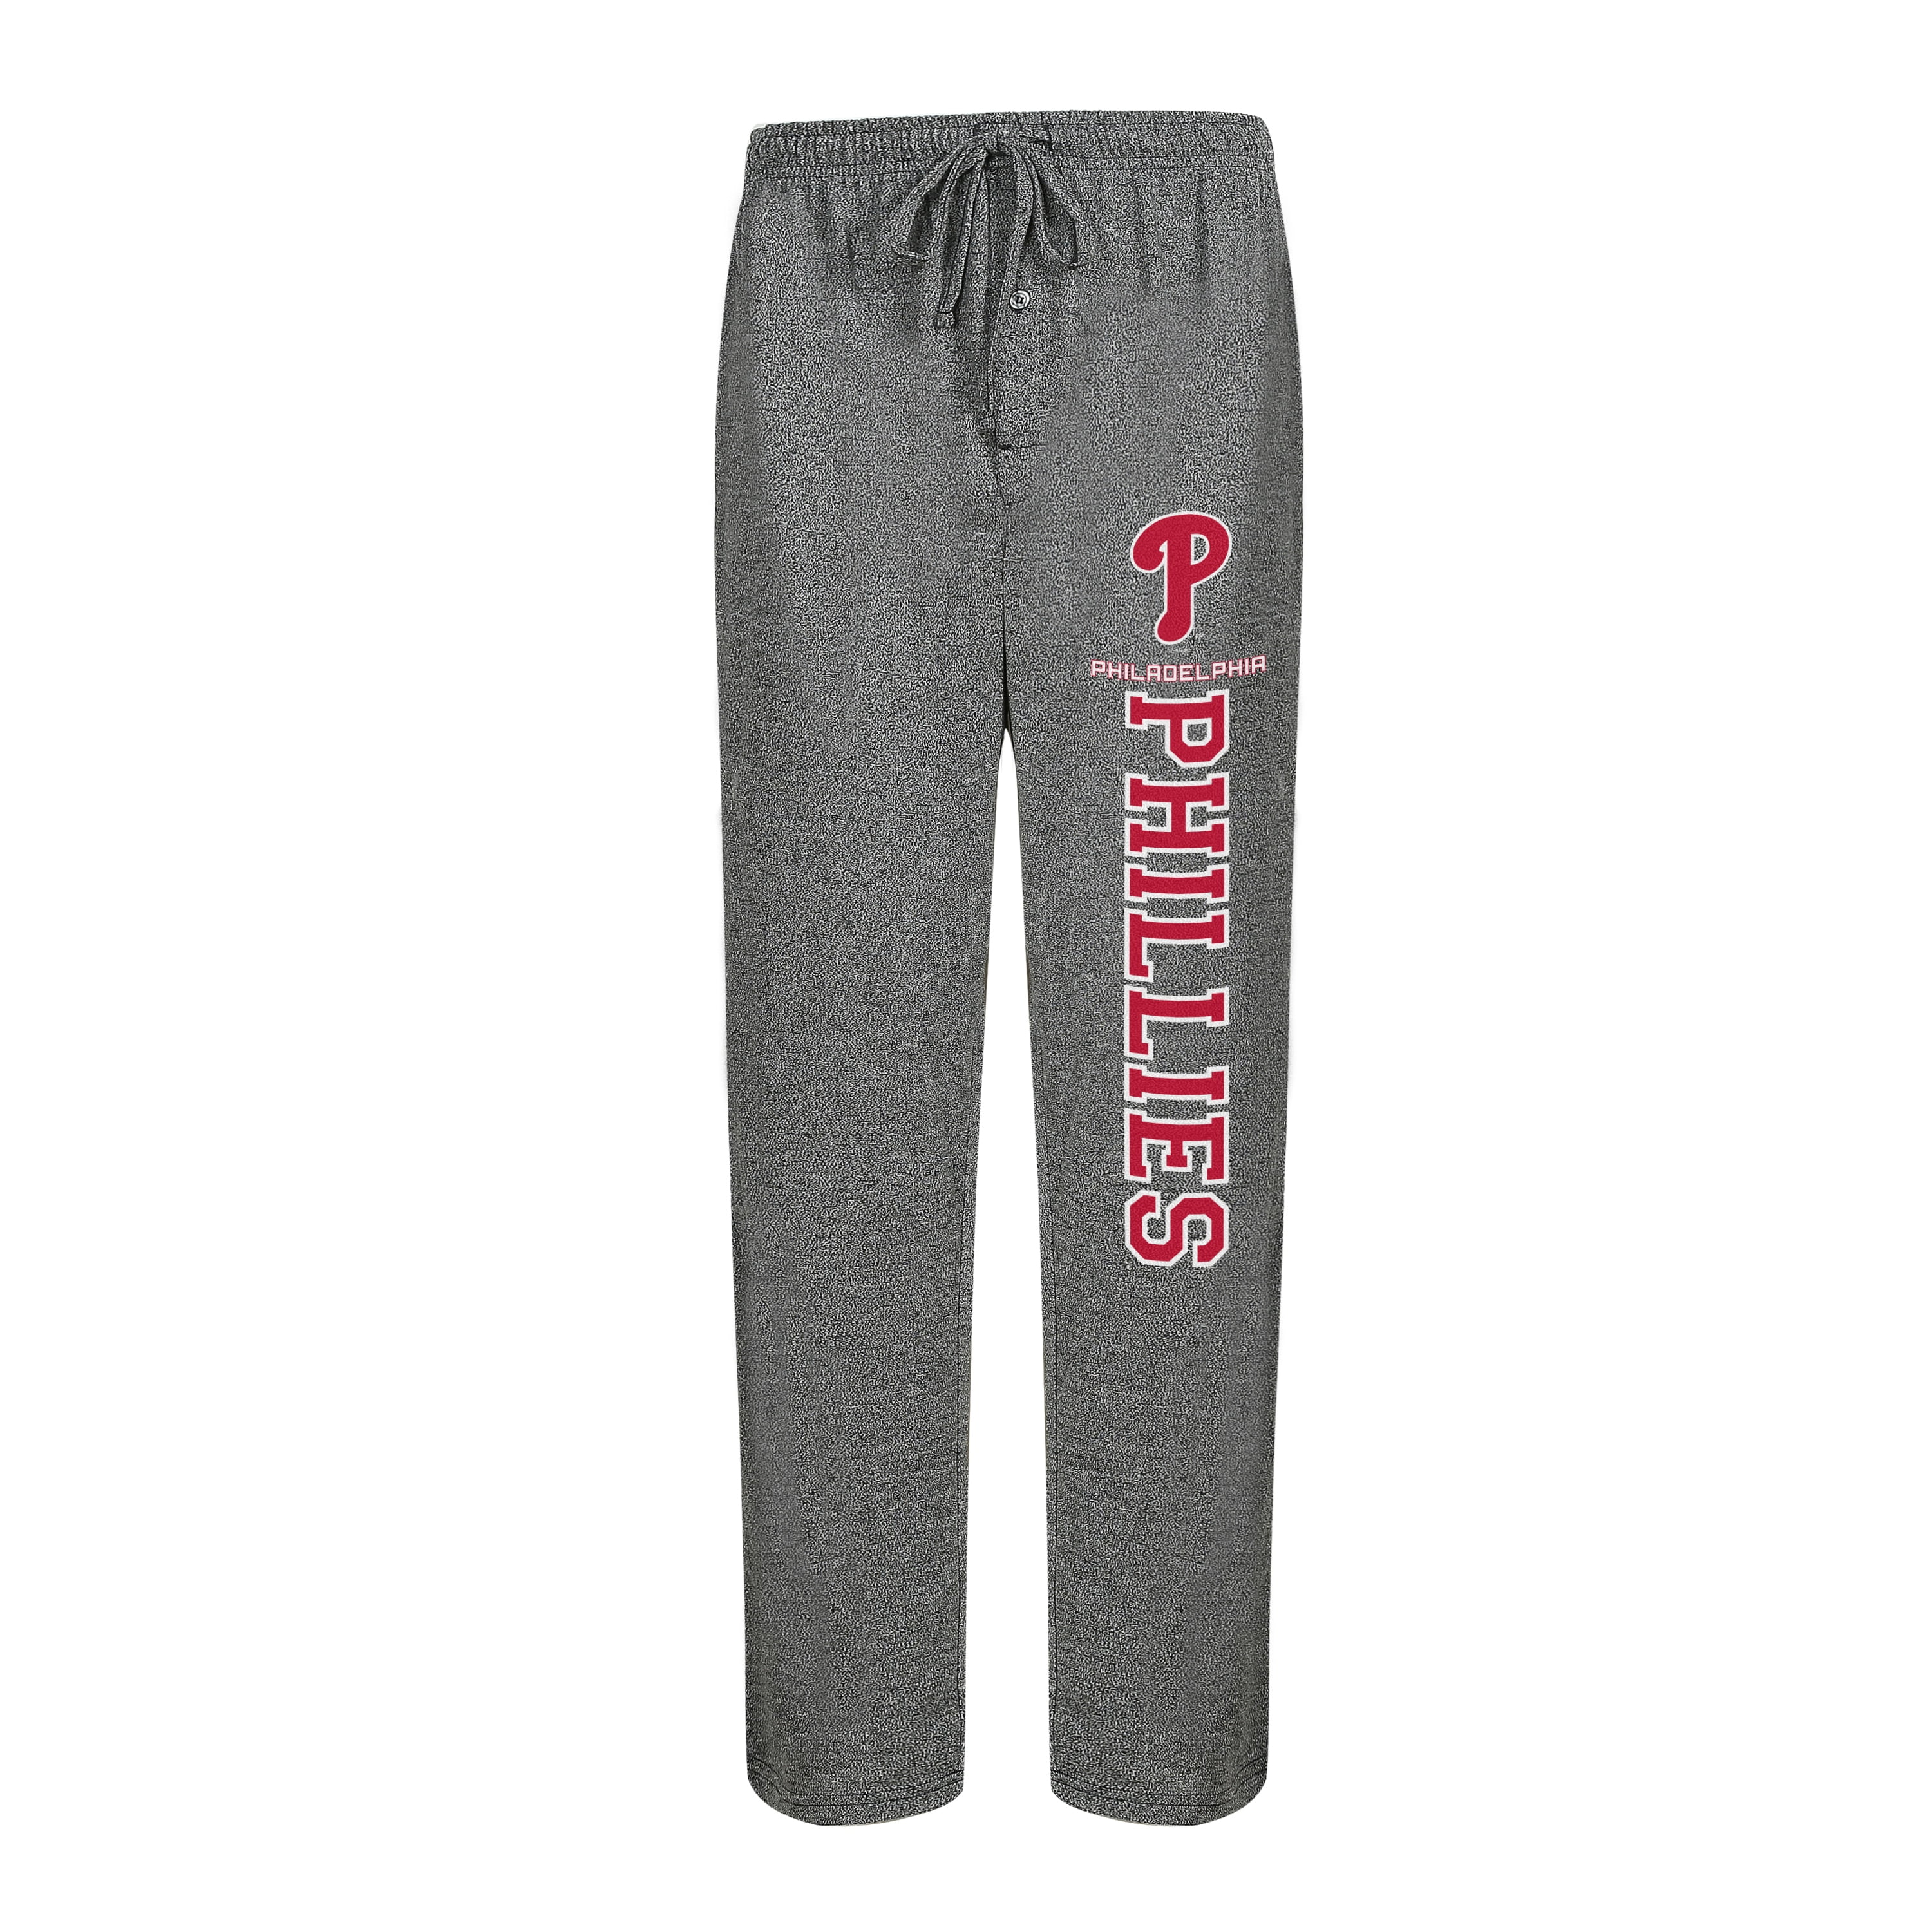 Philadelphia Phillies Concepts Sport Alert Knit Pants - Charcoal ...